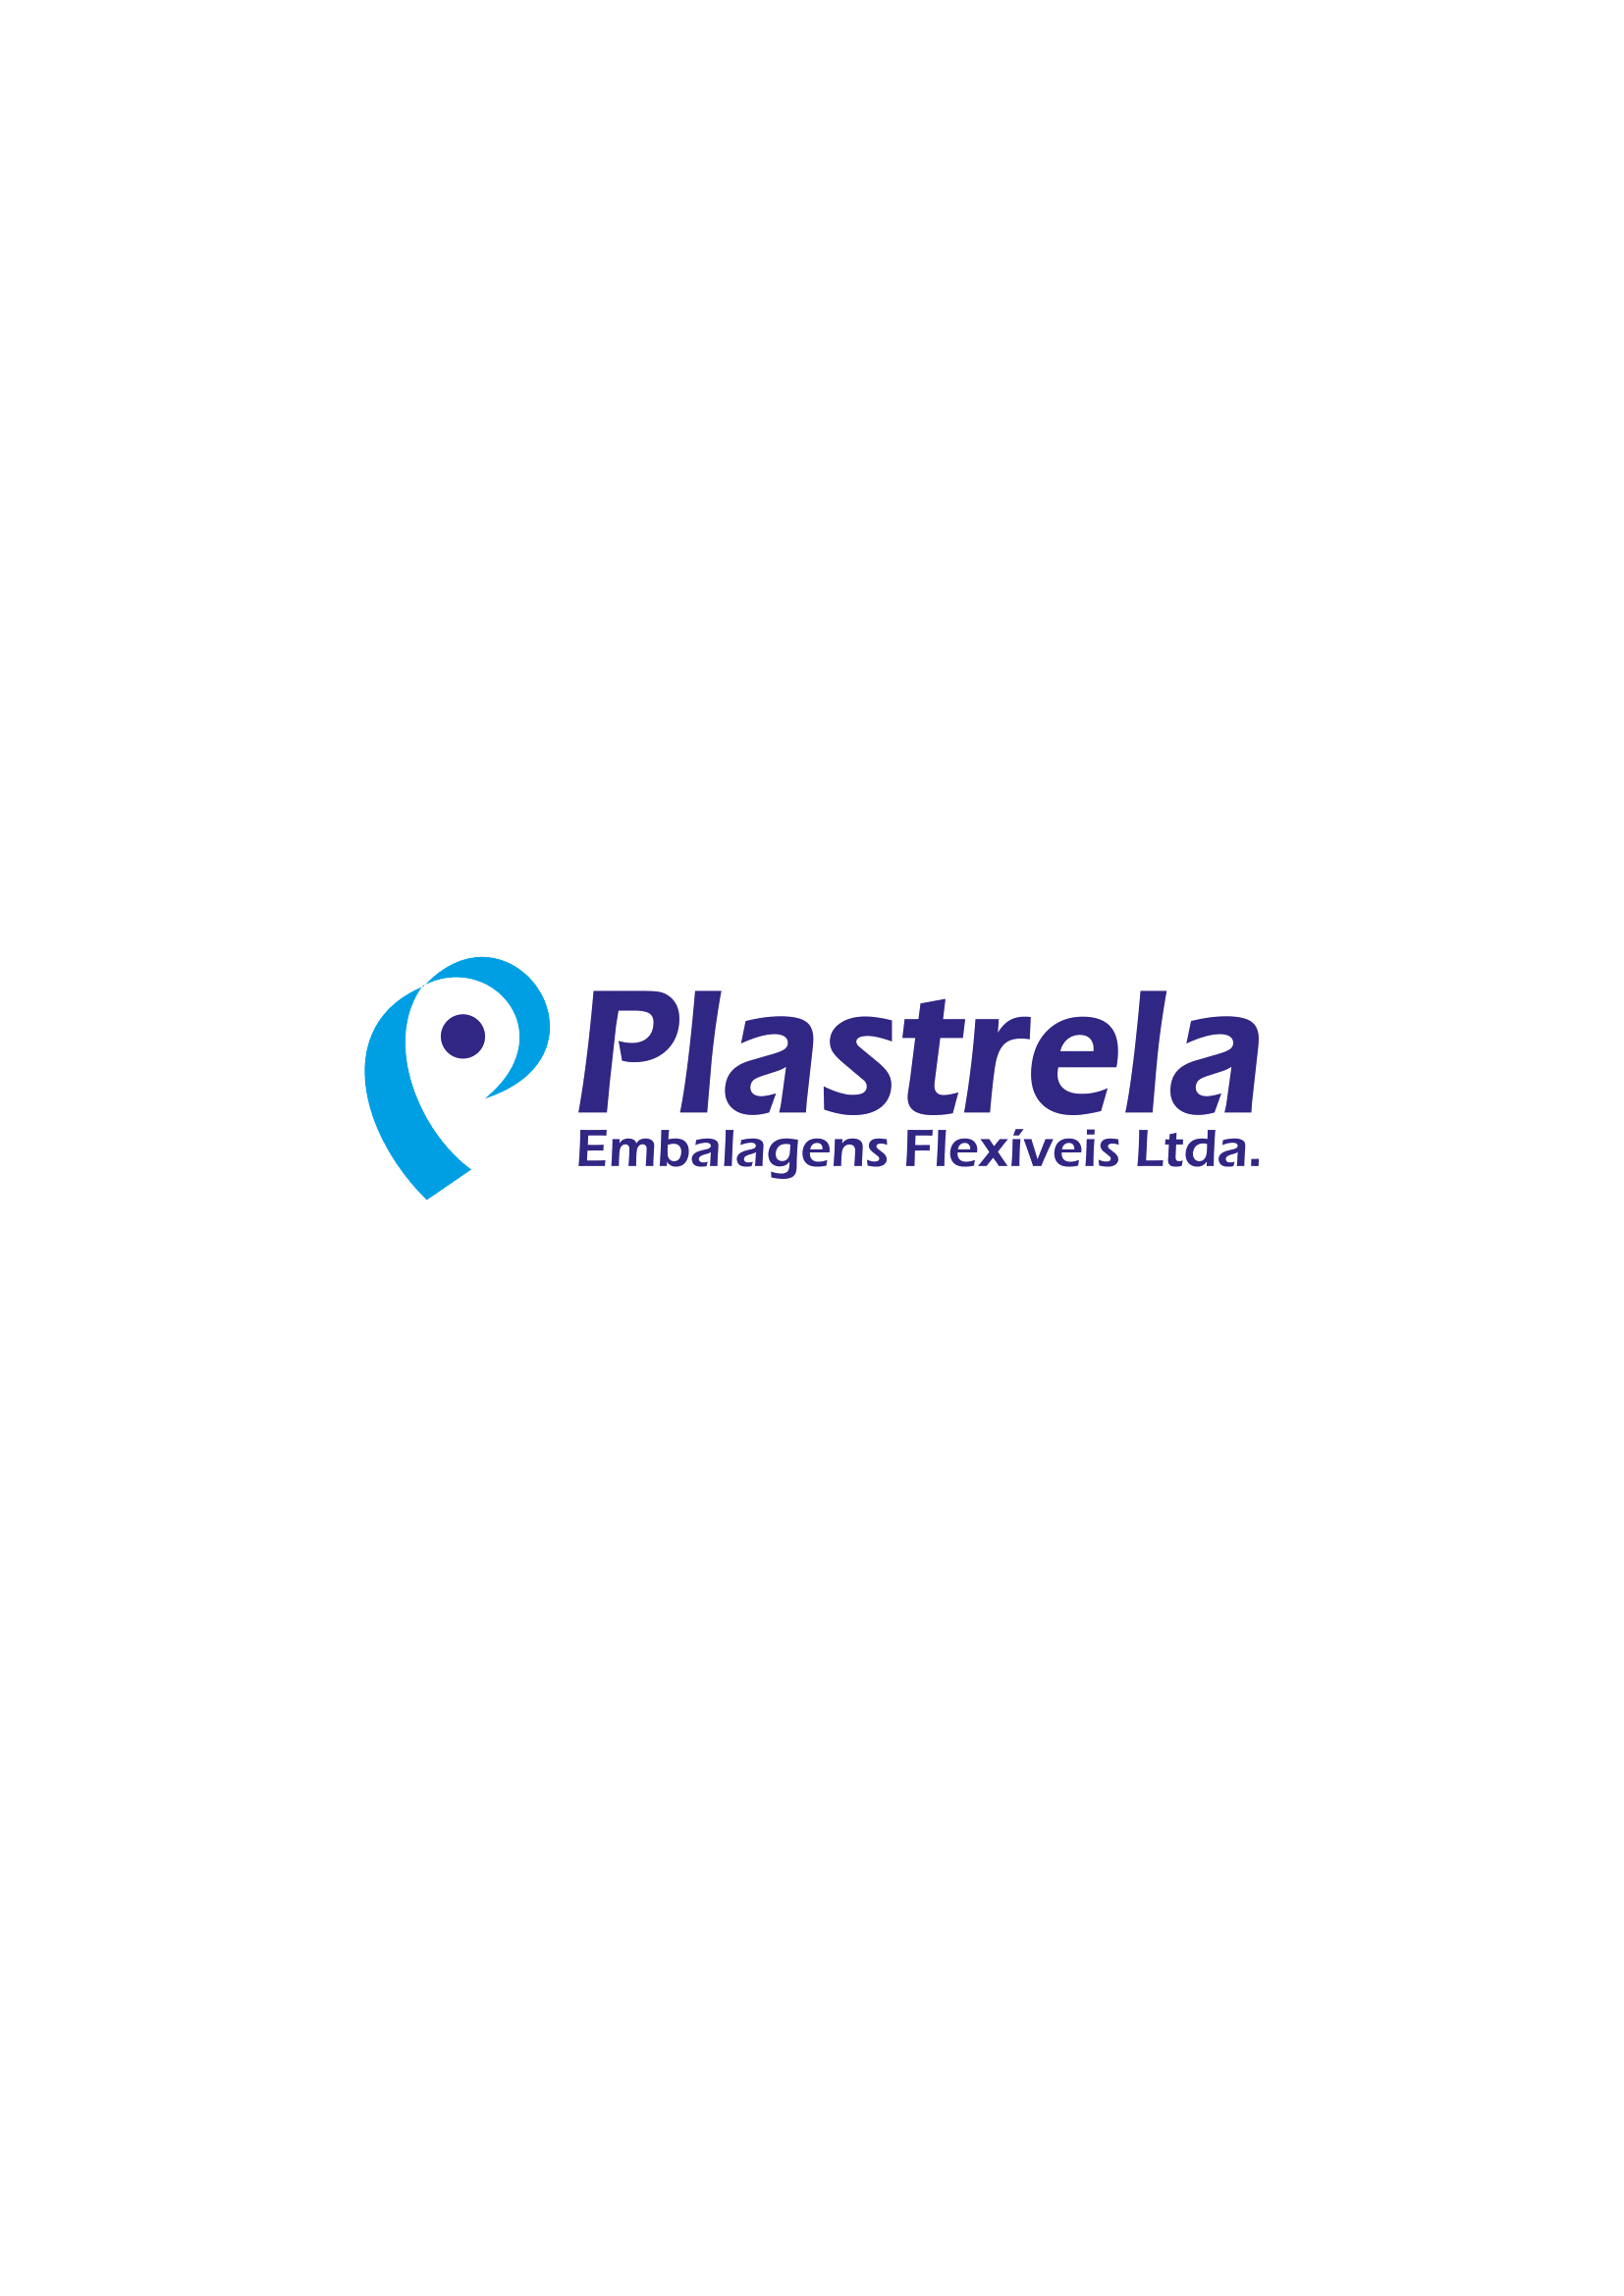 Na imagem logomarca Plastrela embalagens flexiceis